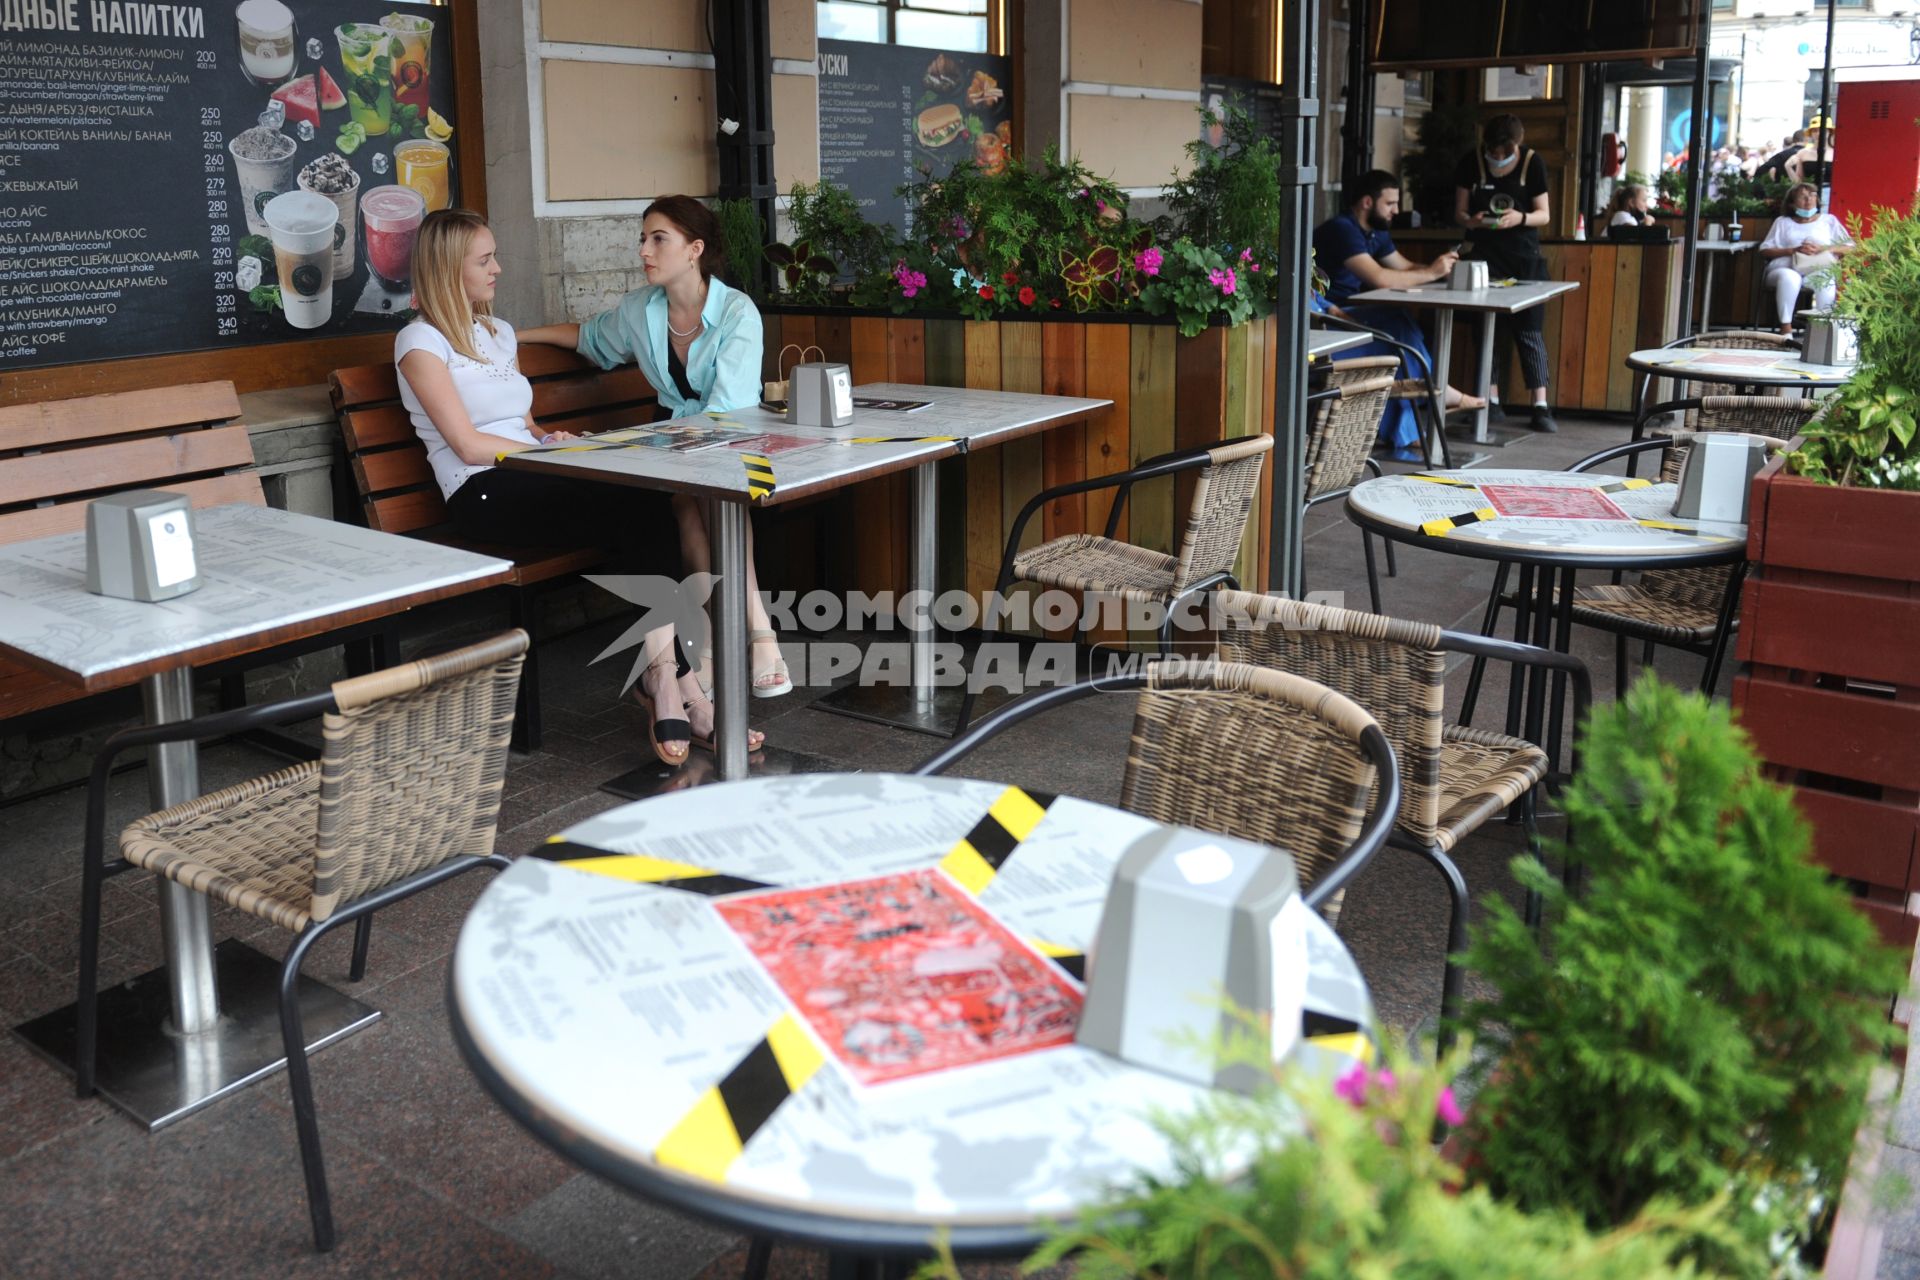 Санкт-Петербург. Посетители сидят на веранде кафе. На столиках наклеена оградительная лента.